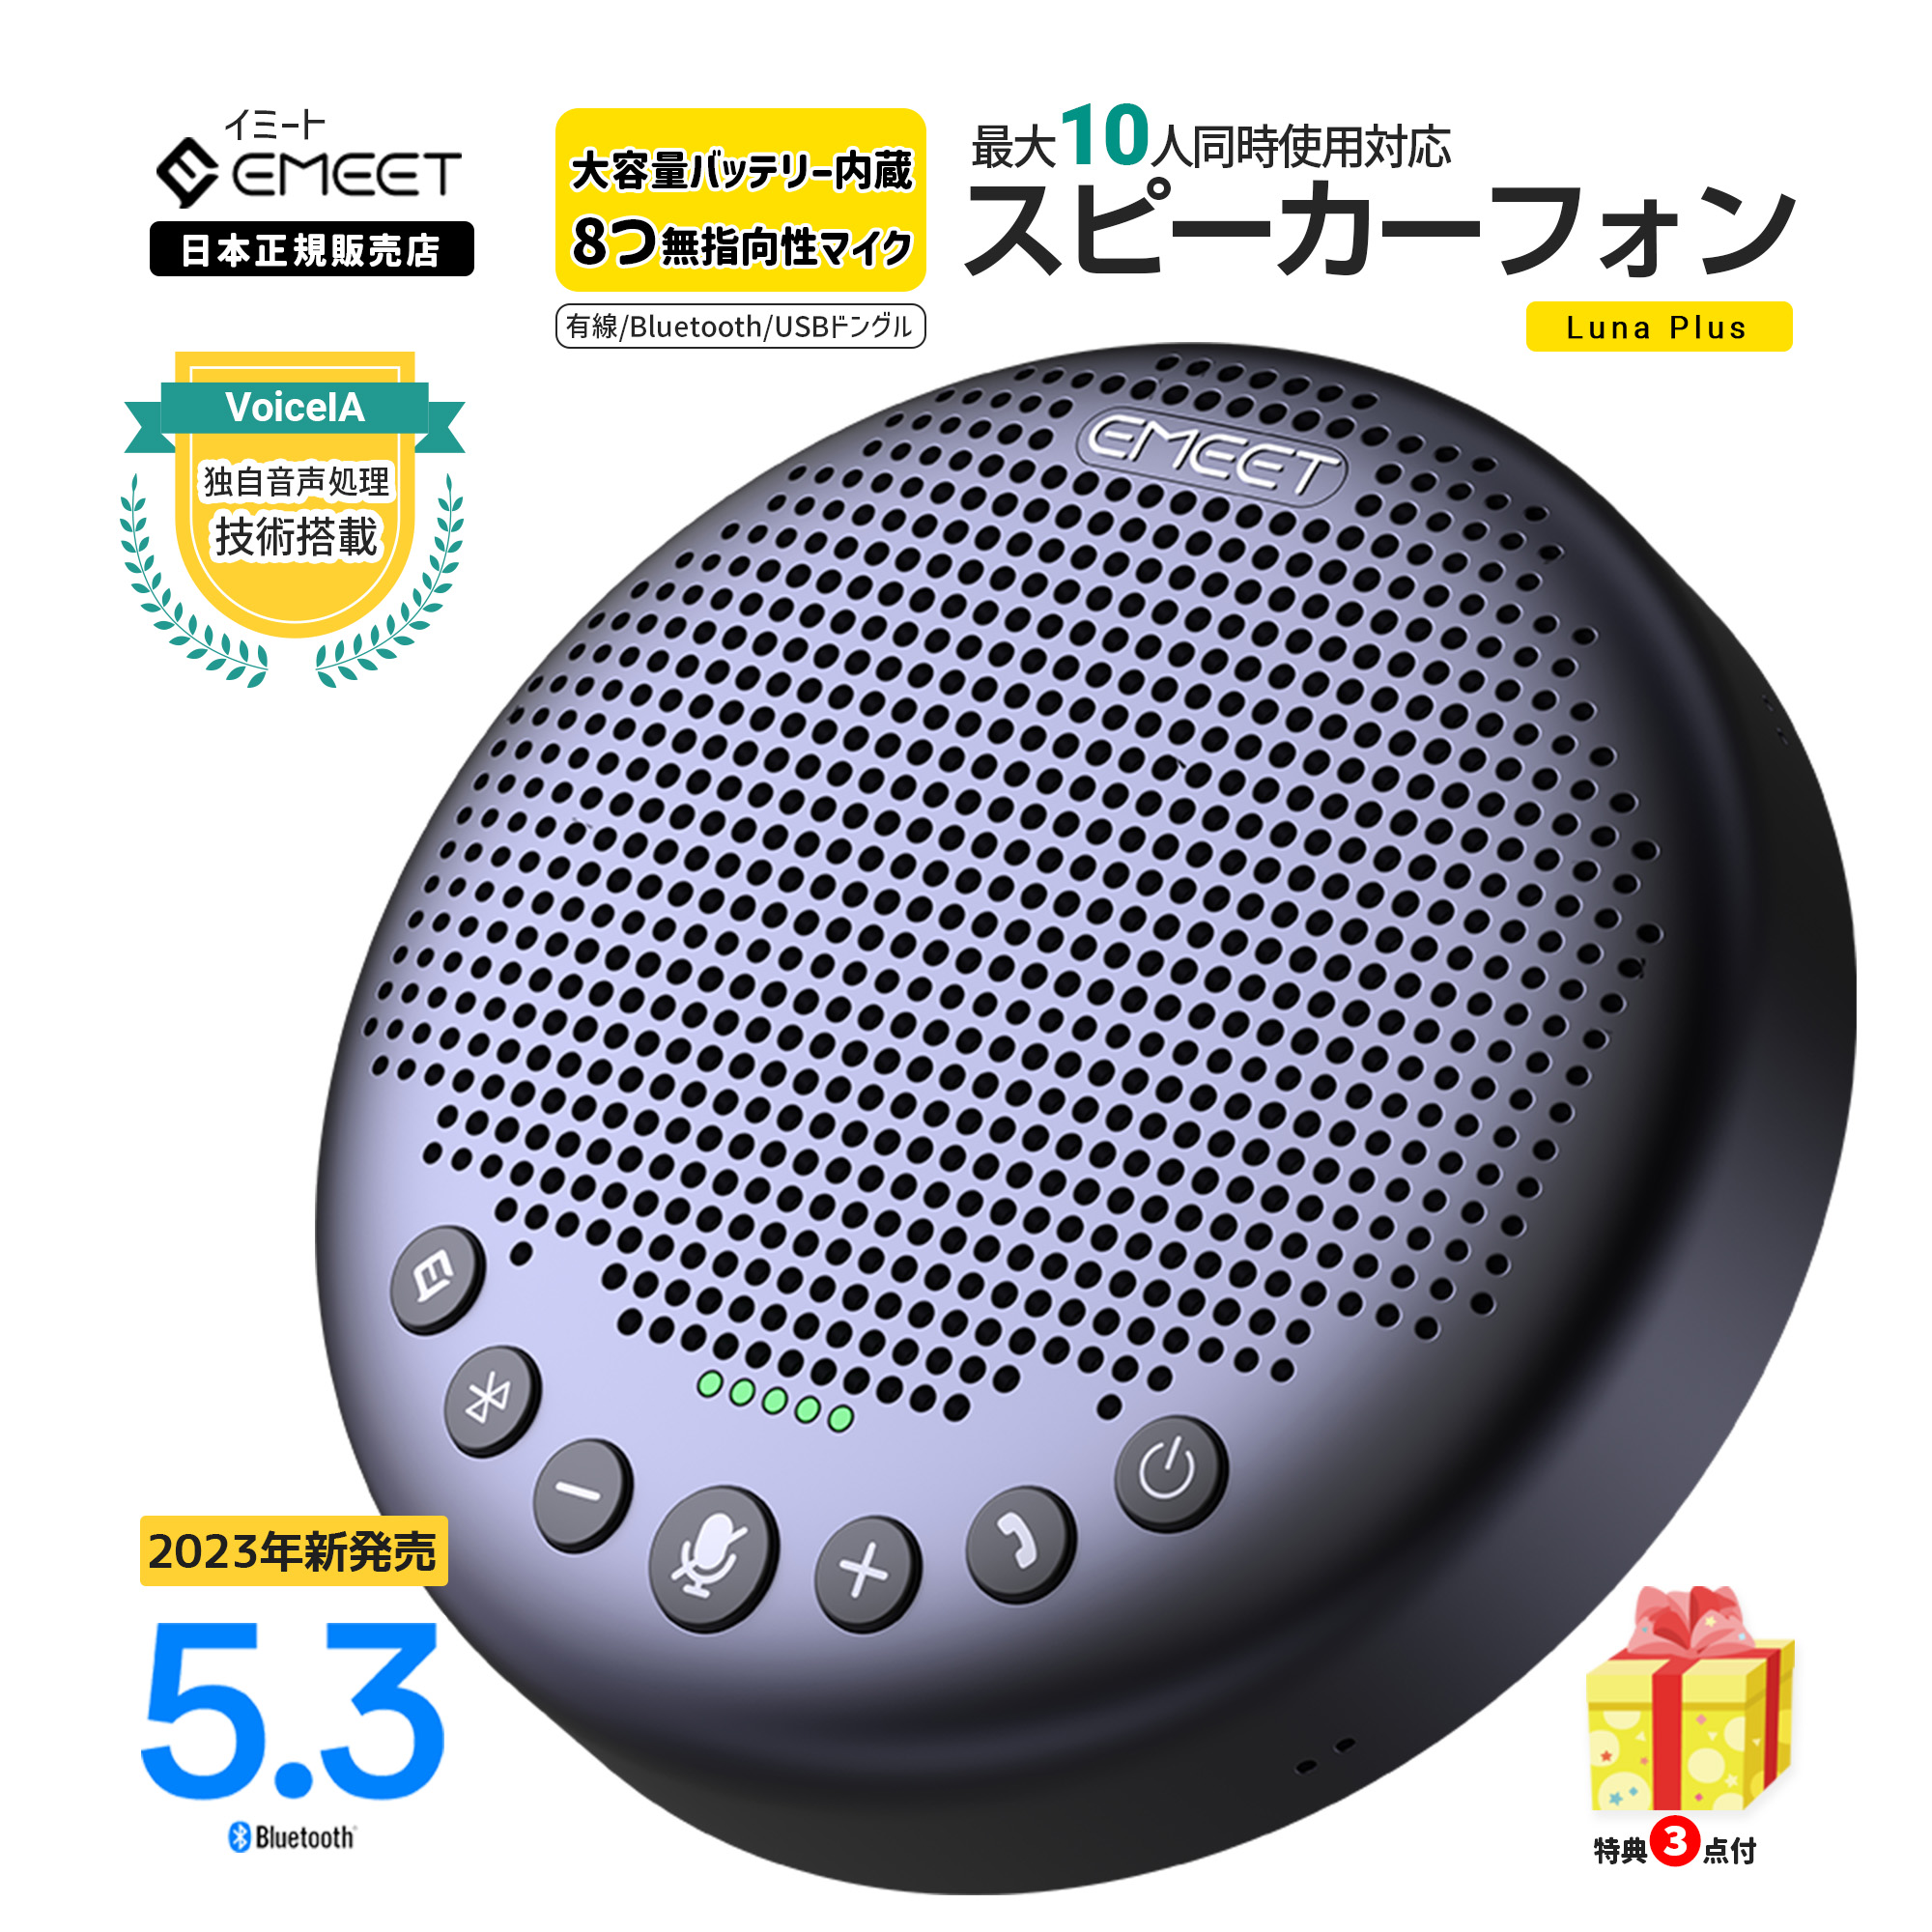 SALE／62%OFF】 Emeet Luna Plus スピーカーフォン 8つマイク エコー